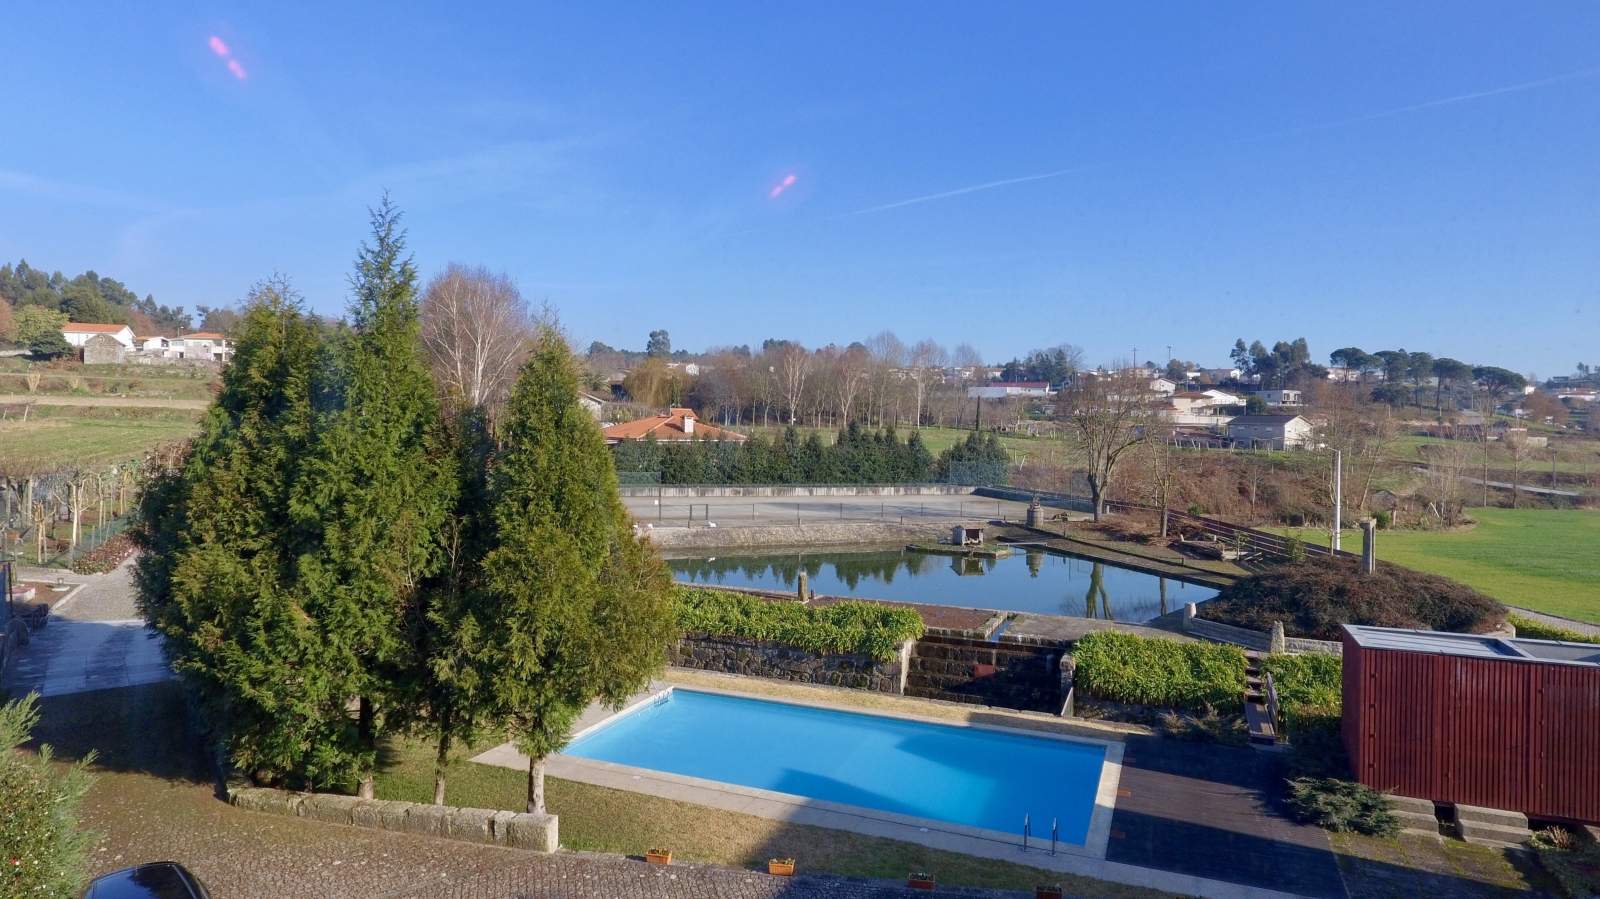 Venta de casa de campo con jardín, lago y piscina, Paredes, Portugal_138139